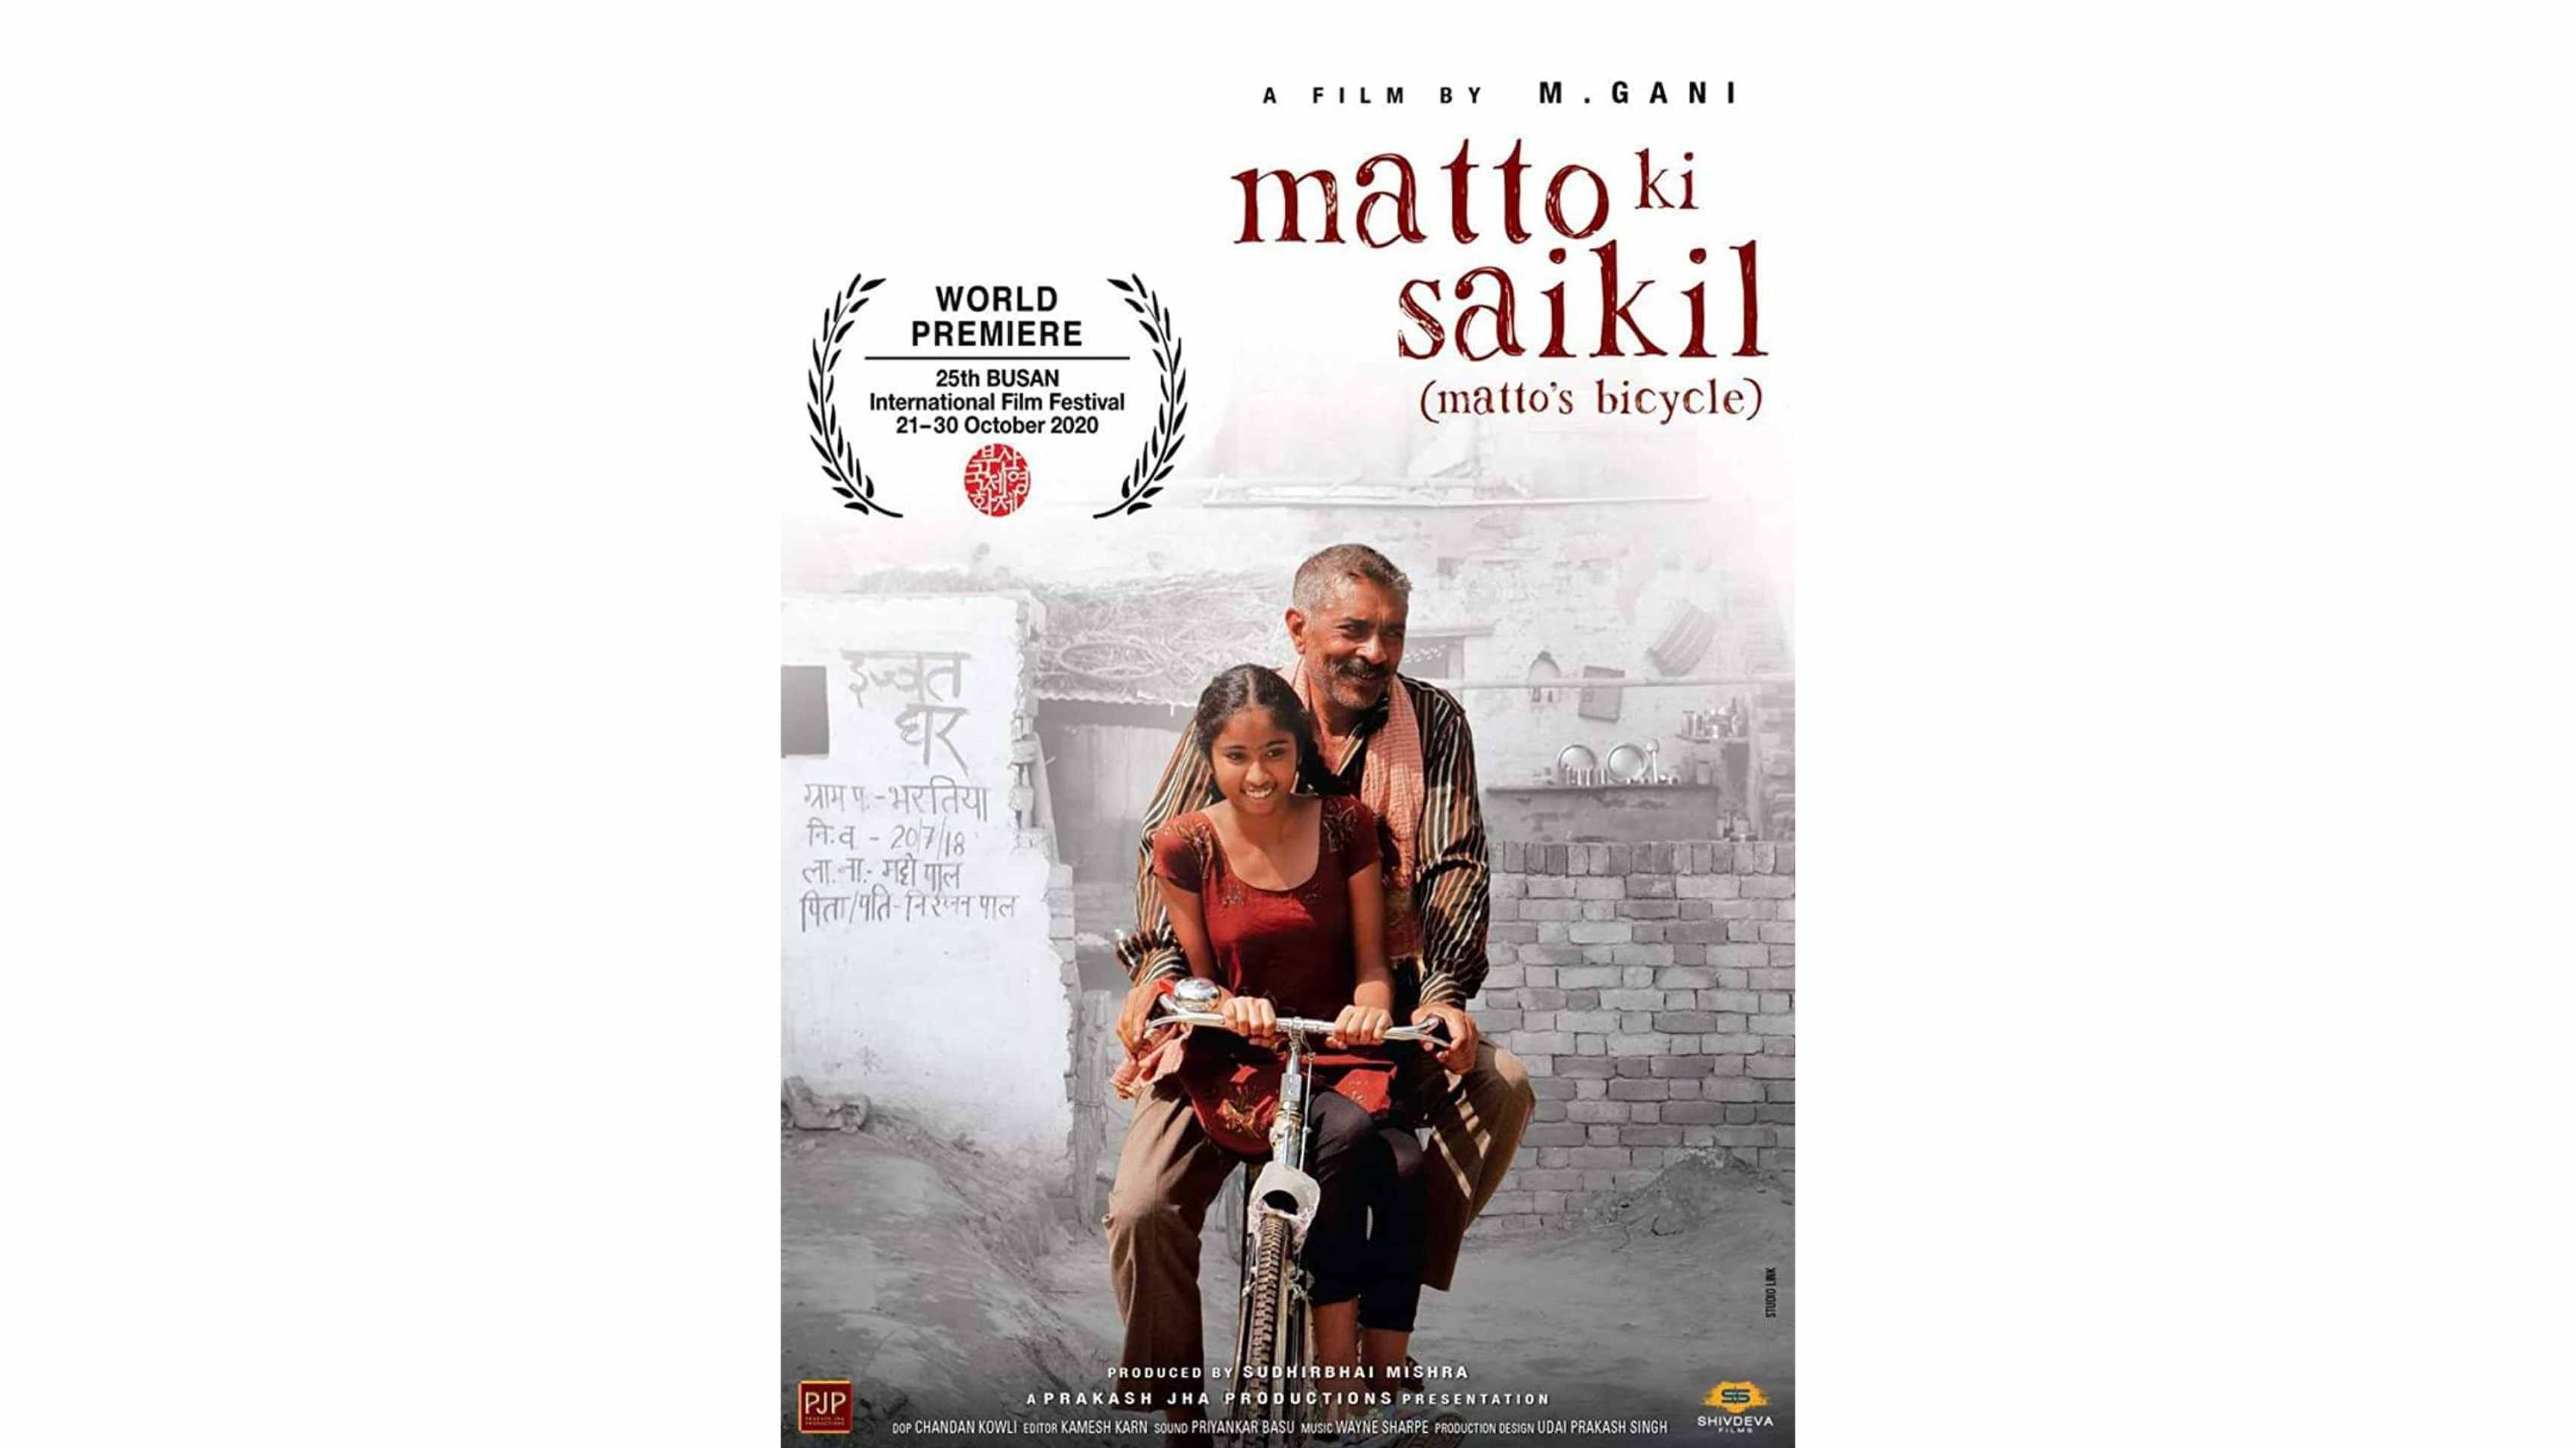 प्रकाश झा की फिल्म ' मट्टो की साइकिल' हुई रिलीज